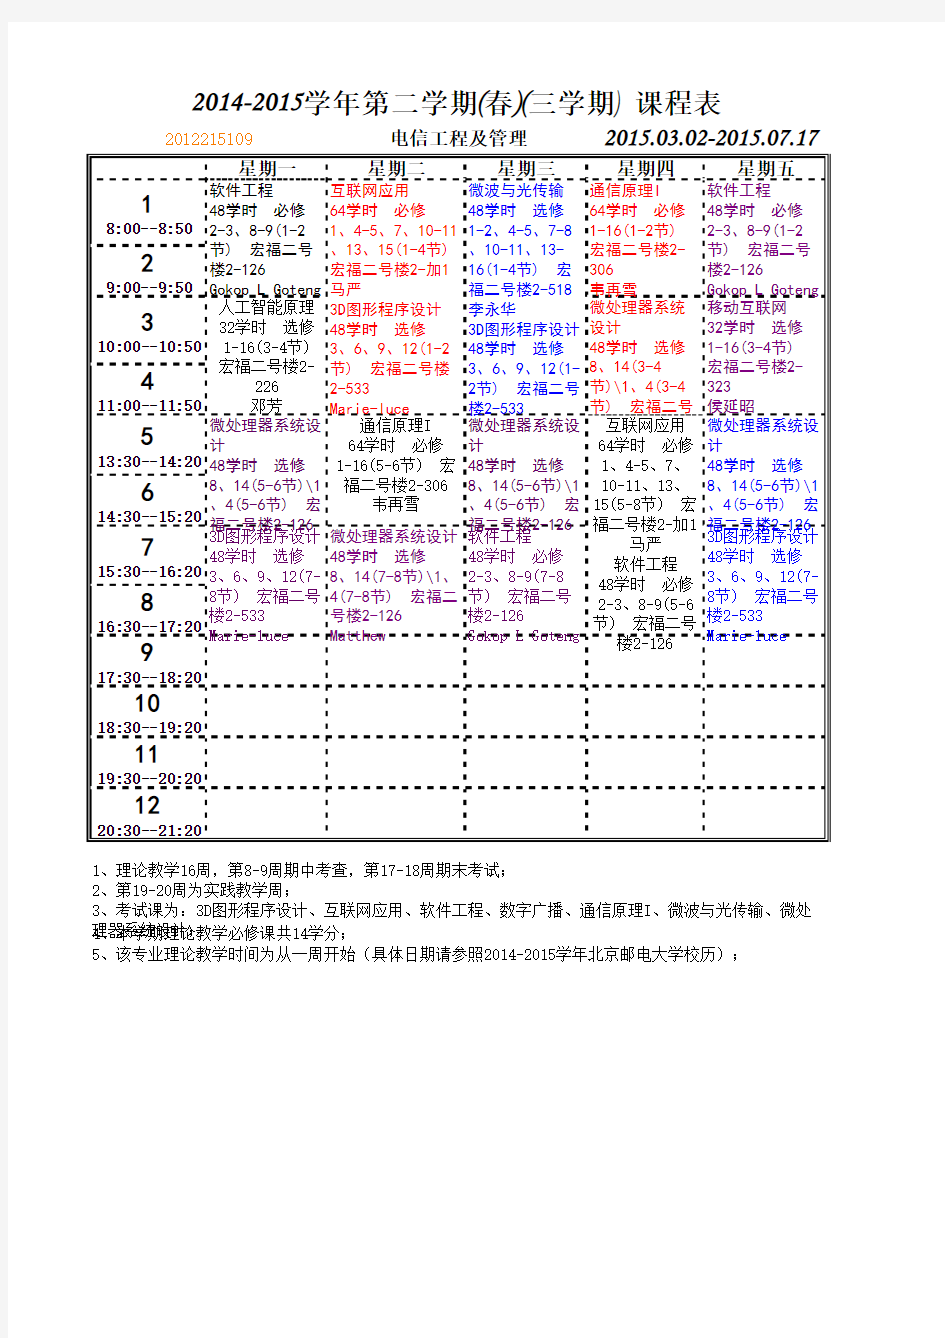 北京邮电大学2014-2015 12级课表